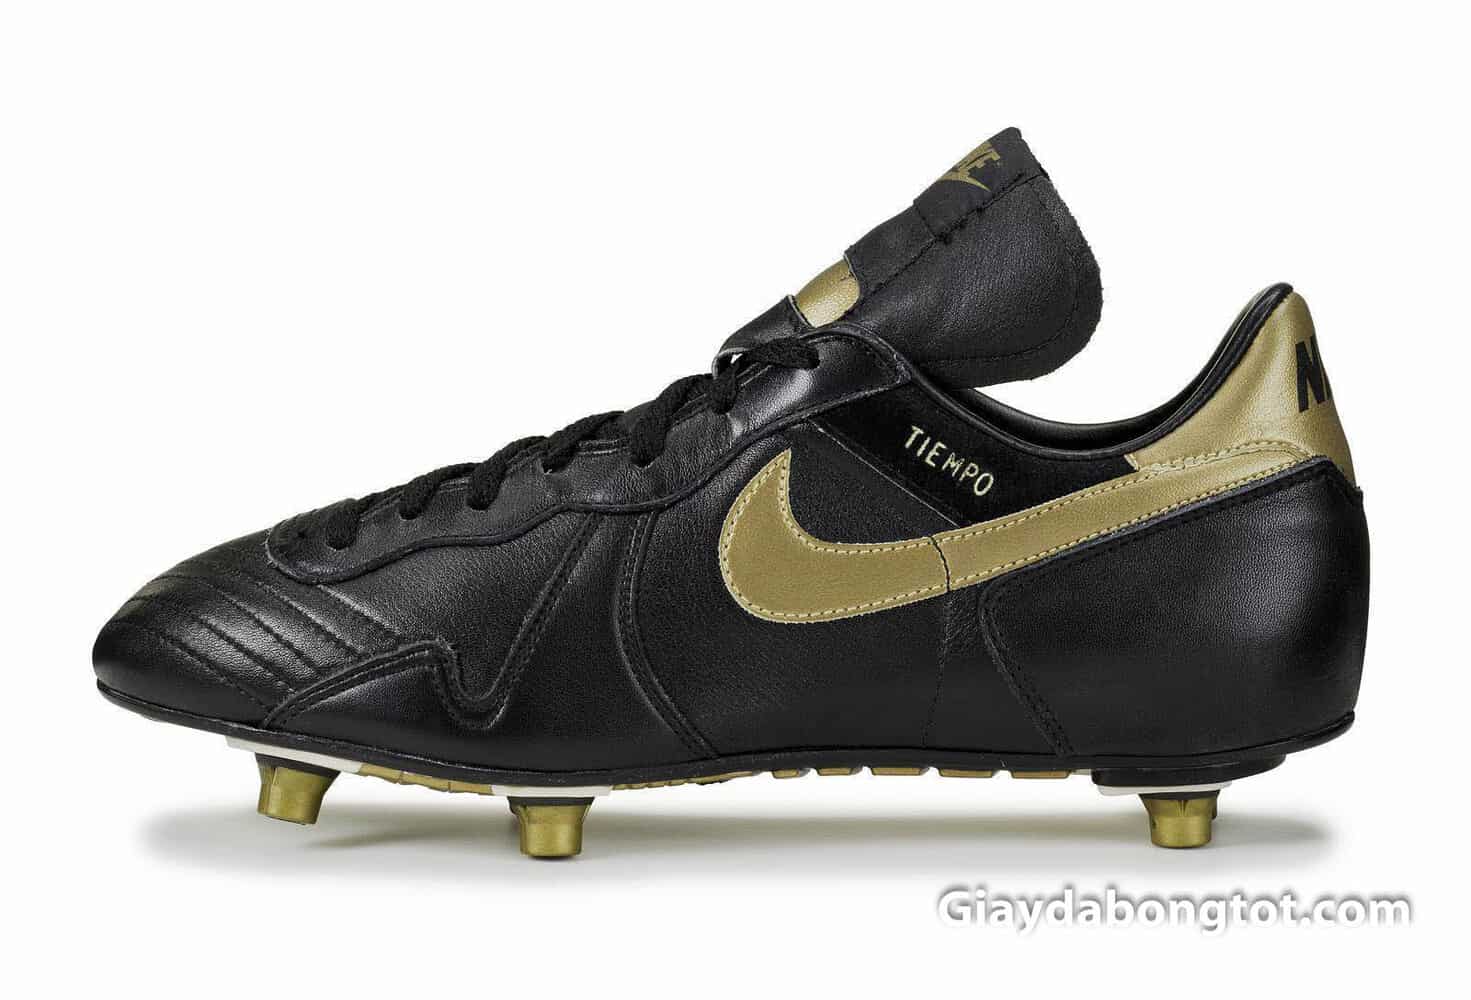 Giày đá bóng Nike Tiempo D được ra mắt vào những năm 1984 thế kỷ trước